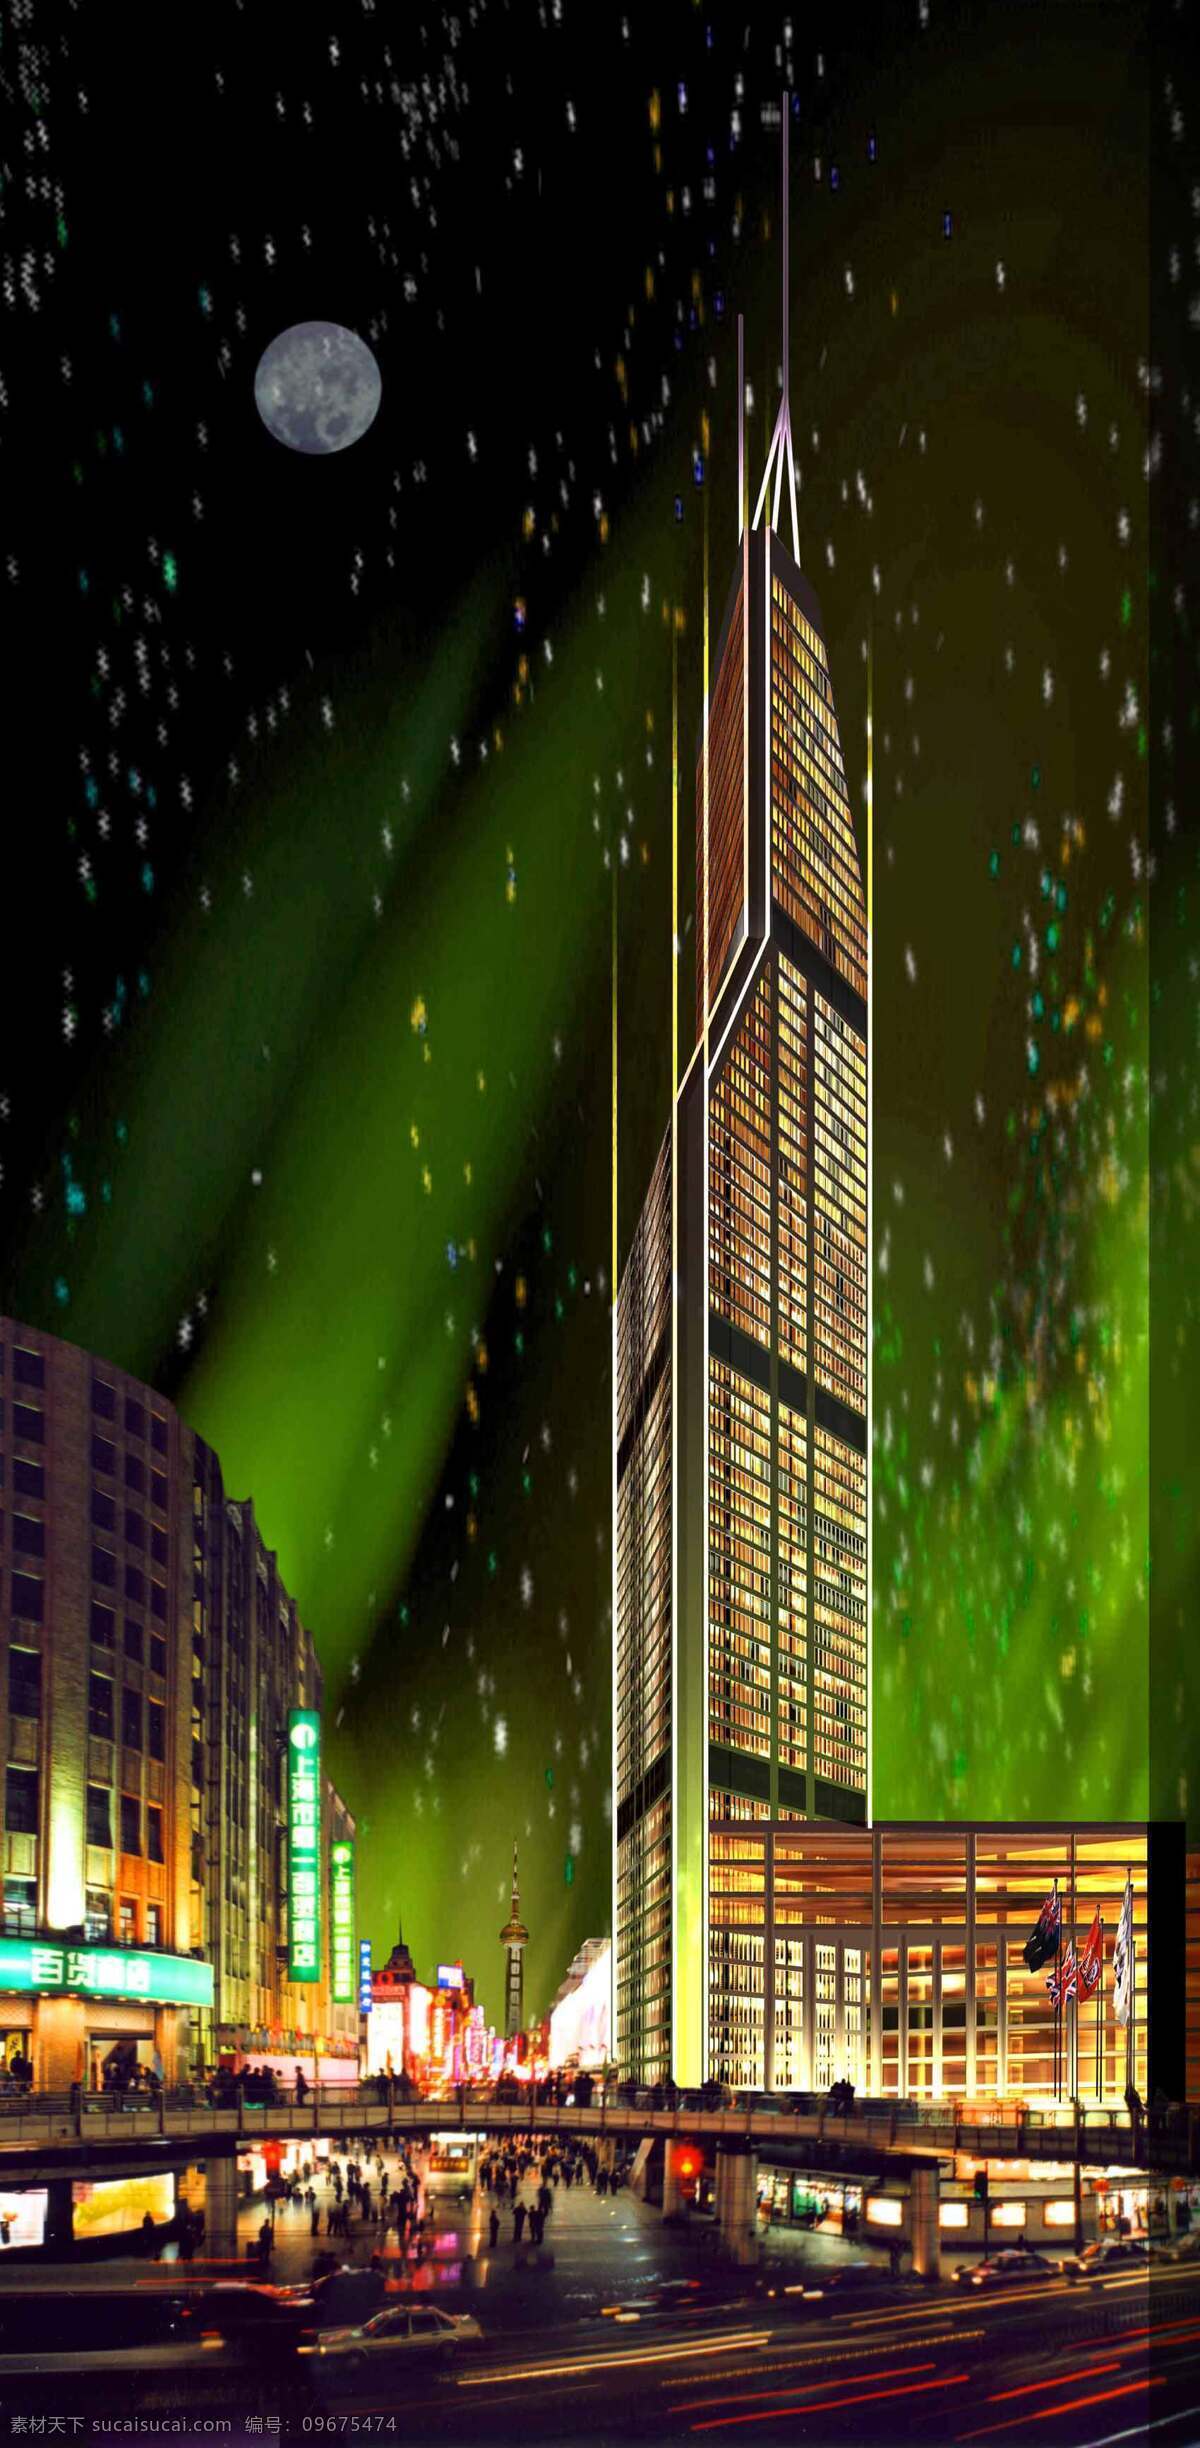 世茂 大厦 3d 模型 3d模型 建筑模型 三维模型 世茂大厦 园林 建筑装饰 设计素材 3d模型素材 室内场景模型